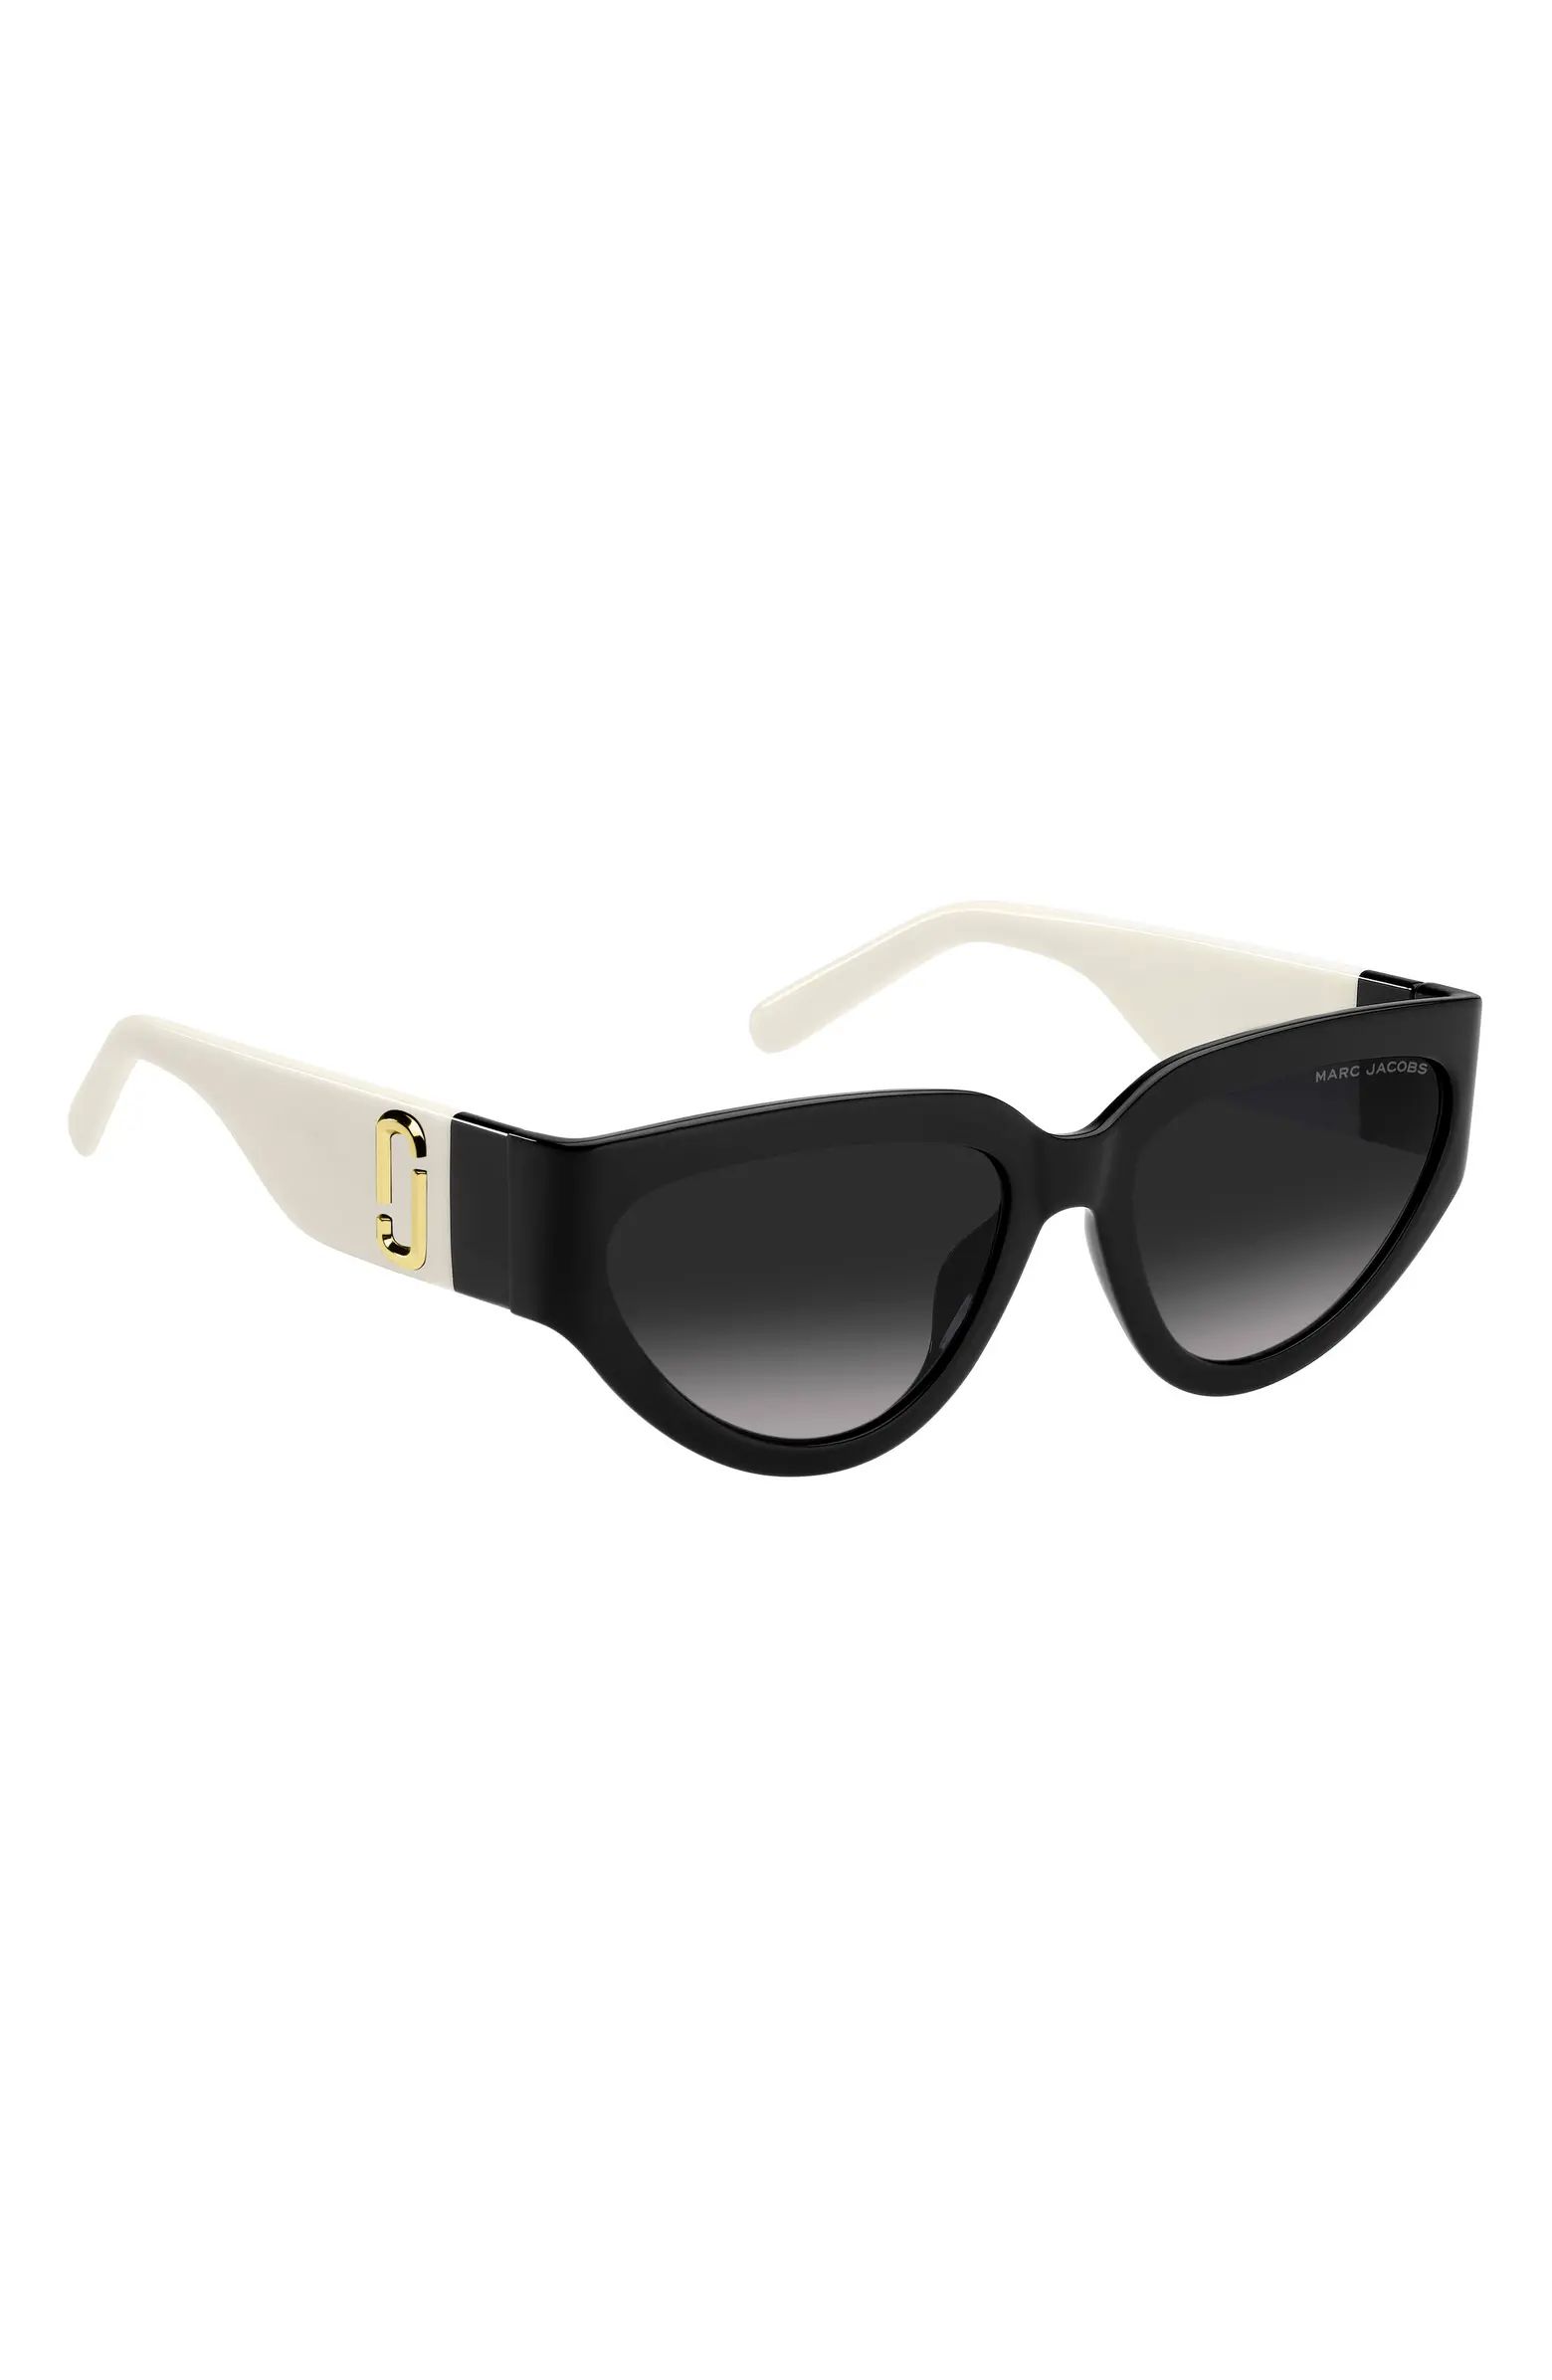 57mm Cat Eye Sunglasses | Nordstrom